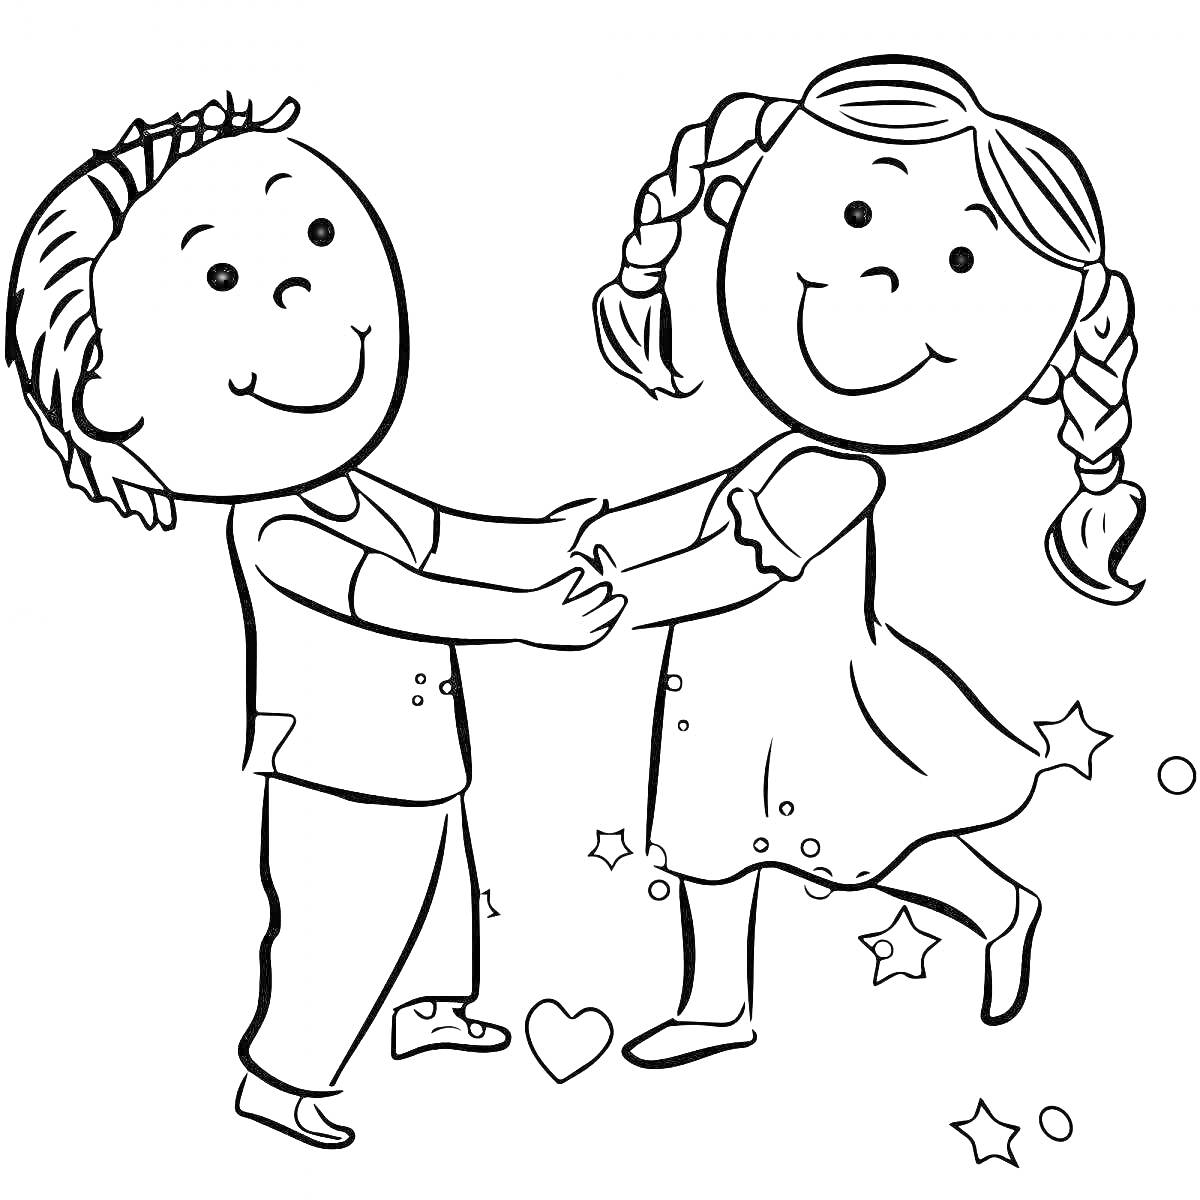 Раскраска Два ребенка, мальчик и девочка, держатся за руки и улыбаются, окружены звездами и маленькими сердечками